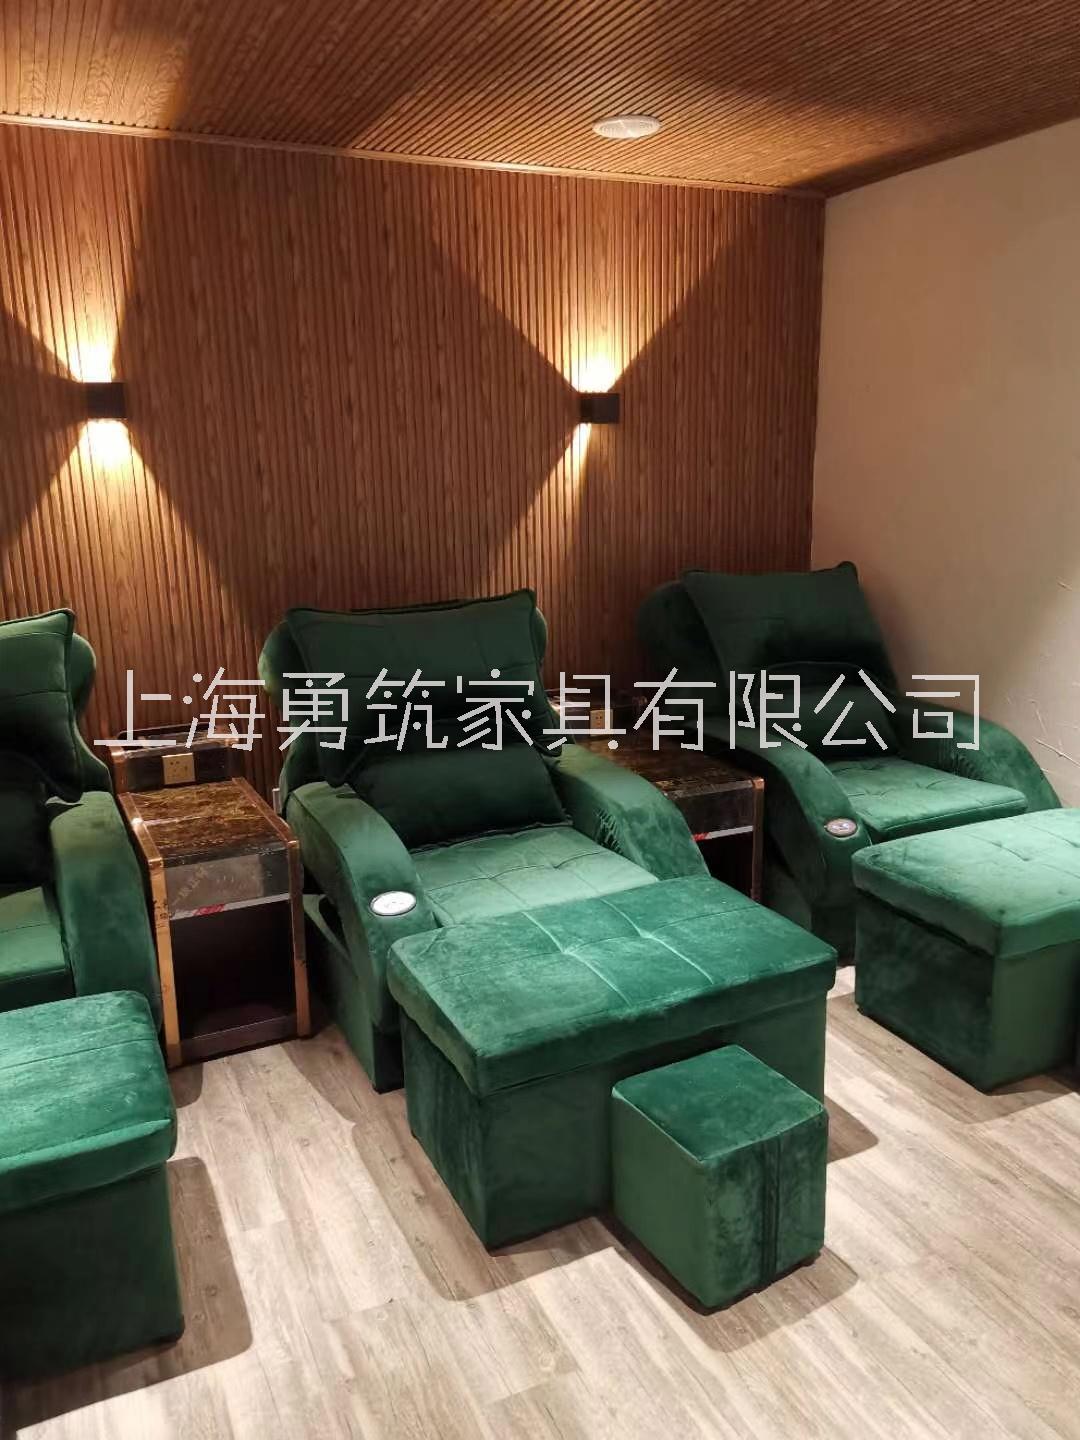 足浴沙发-上海哪里有卖足浴沙发床-多少钱一张-买1个